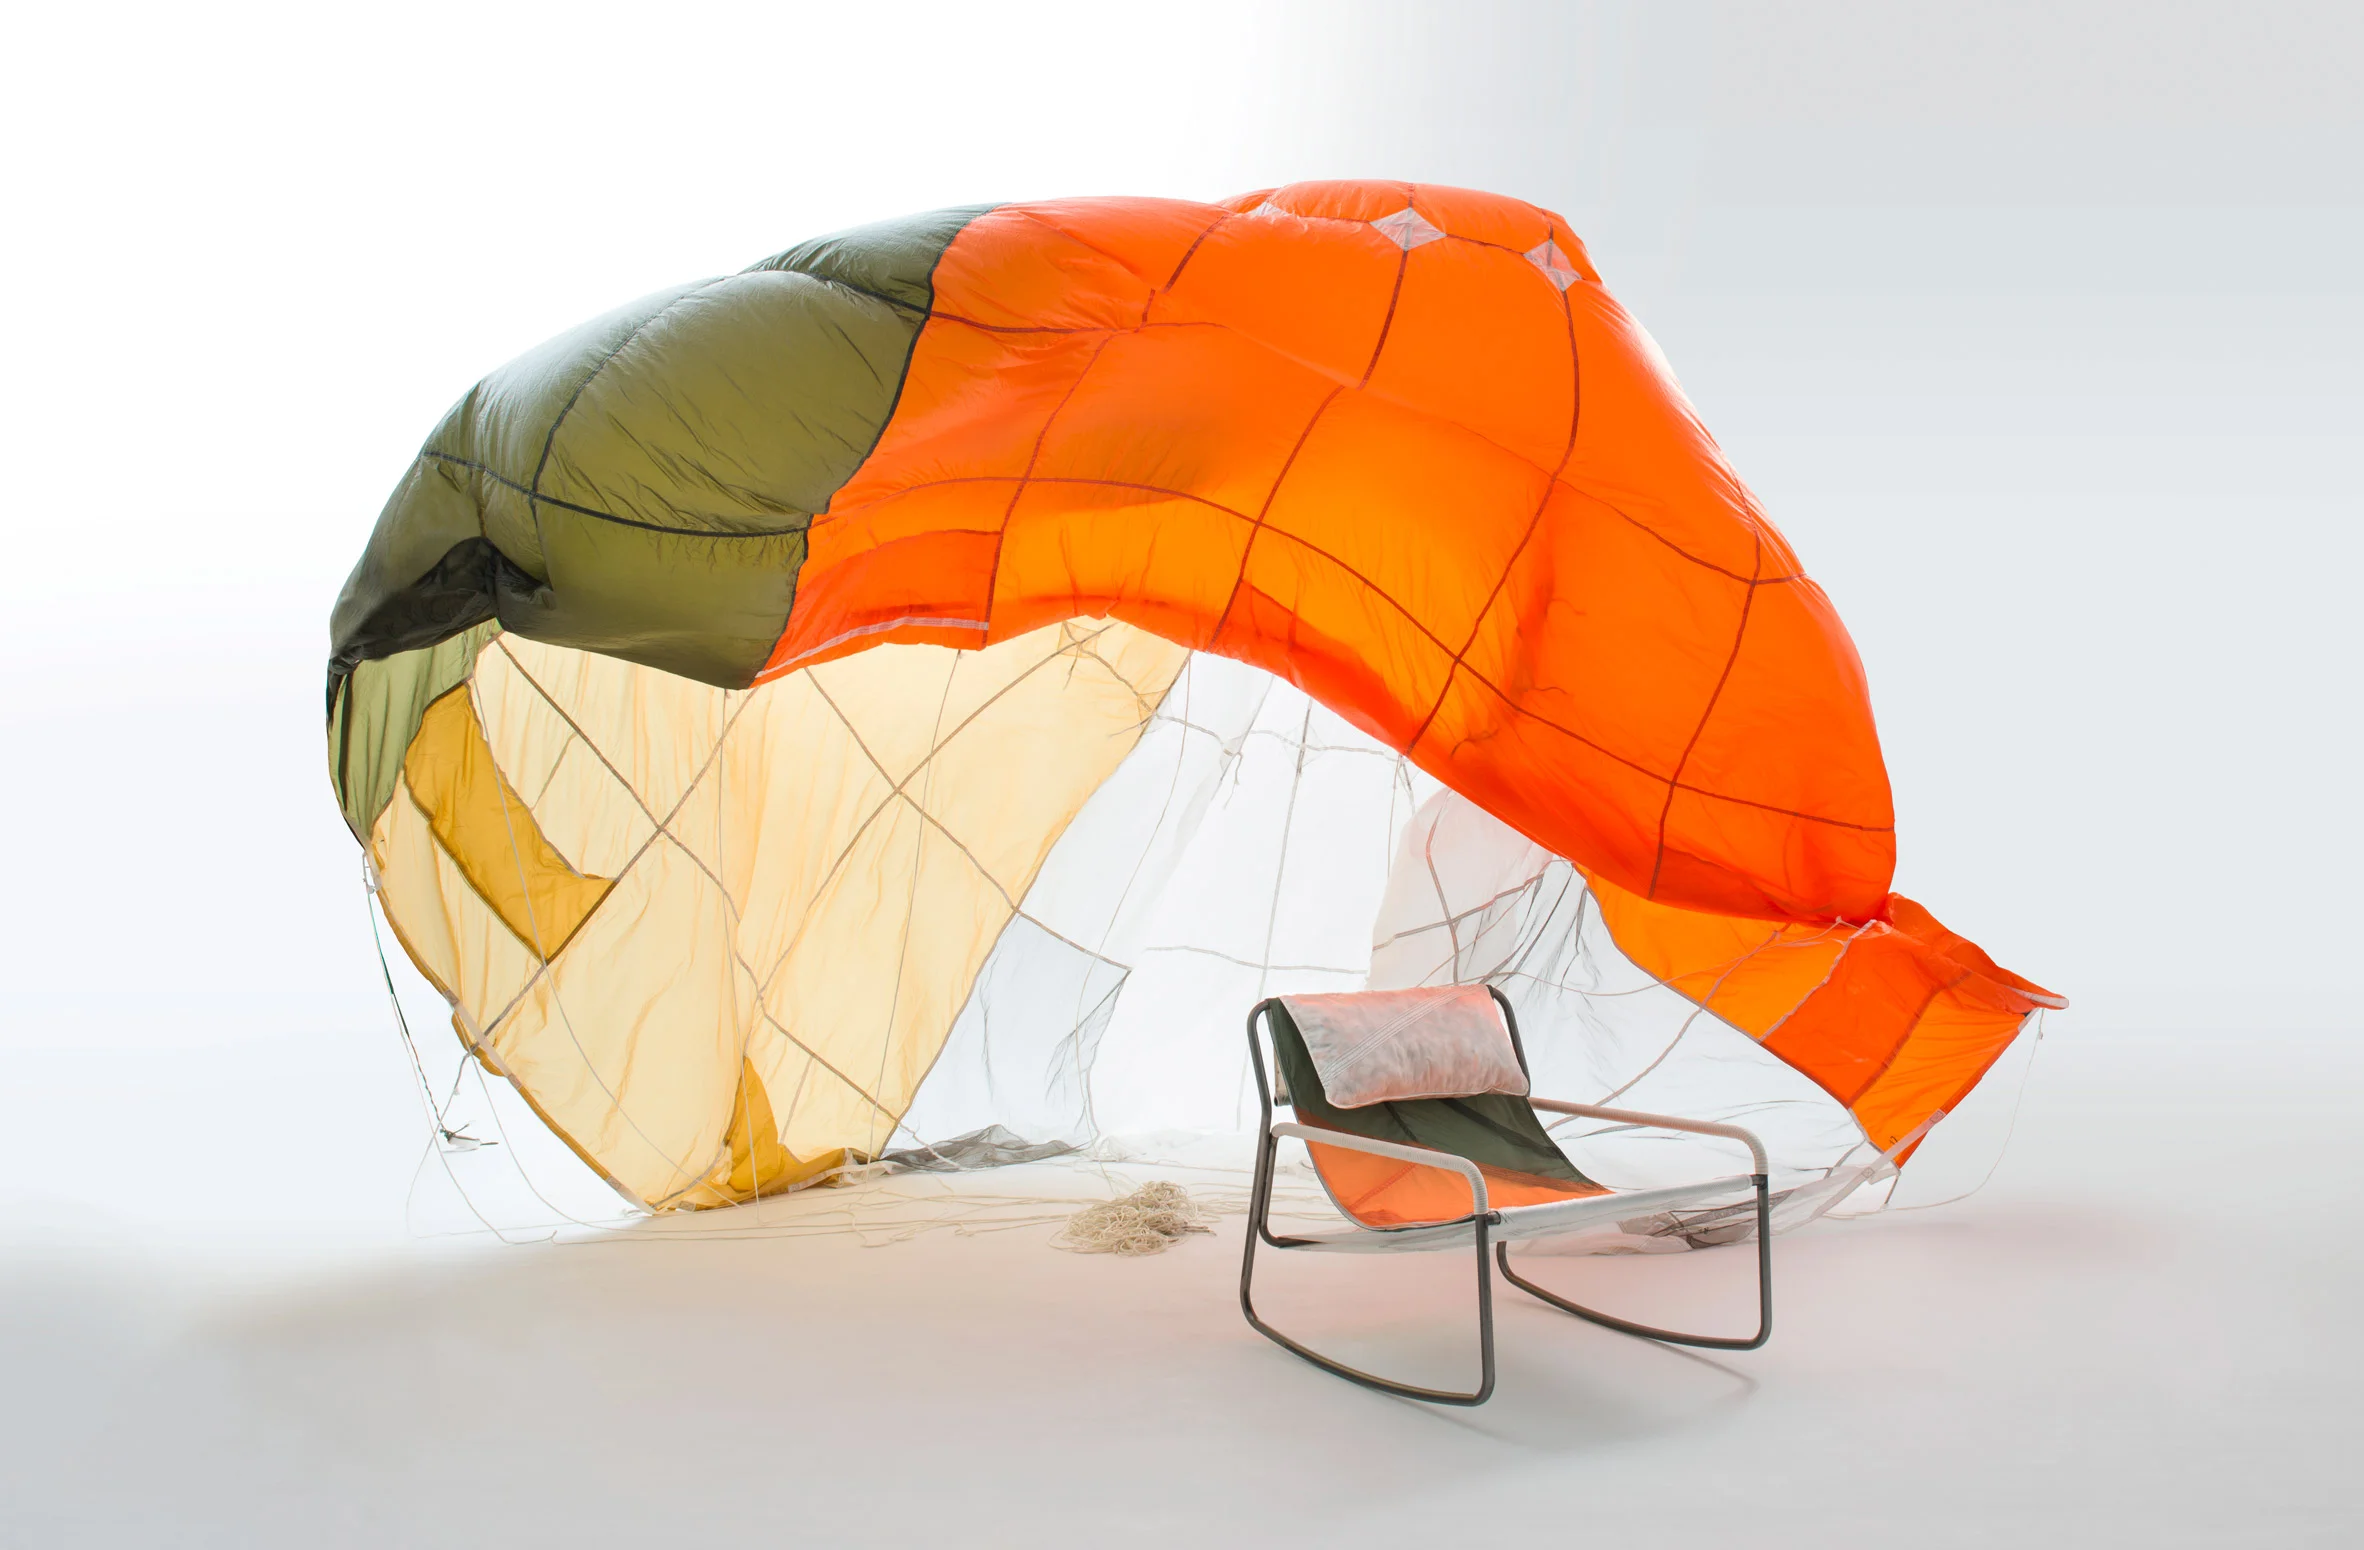 Ти будеш вражений красою меблів, які зробили зі звичайних парашутів - фото 452549